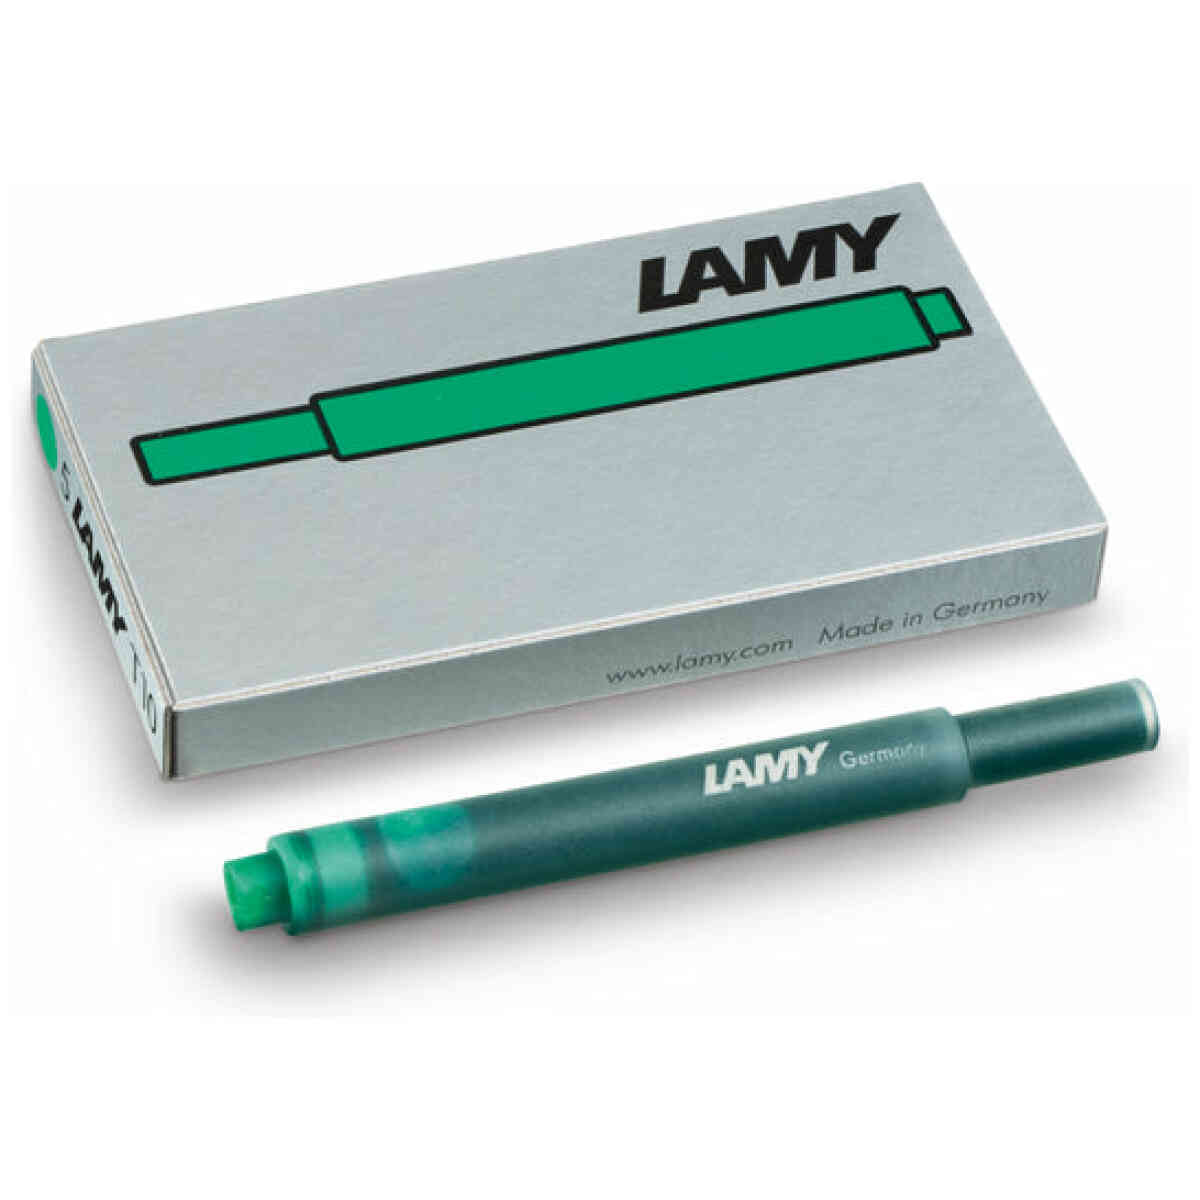 Lamy T10 Ink cardrige green